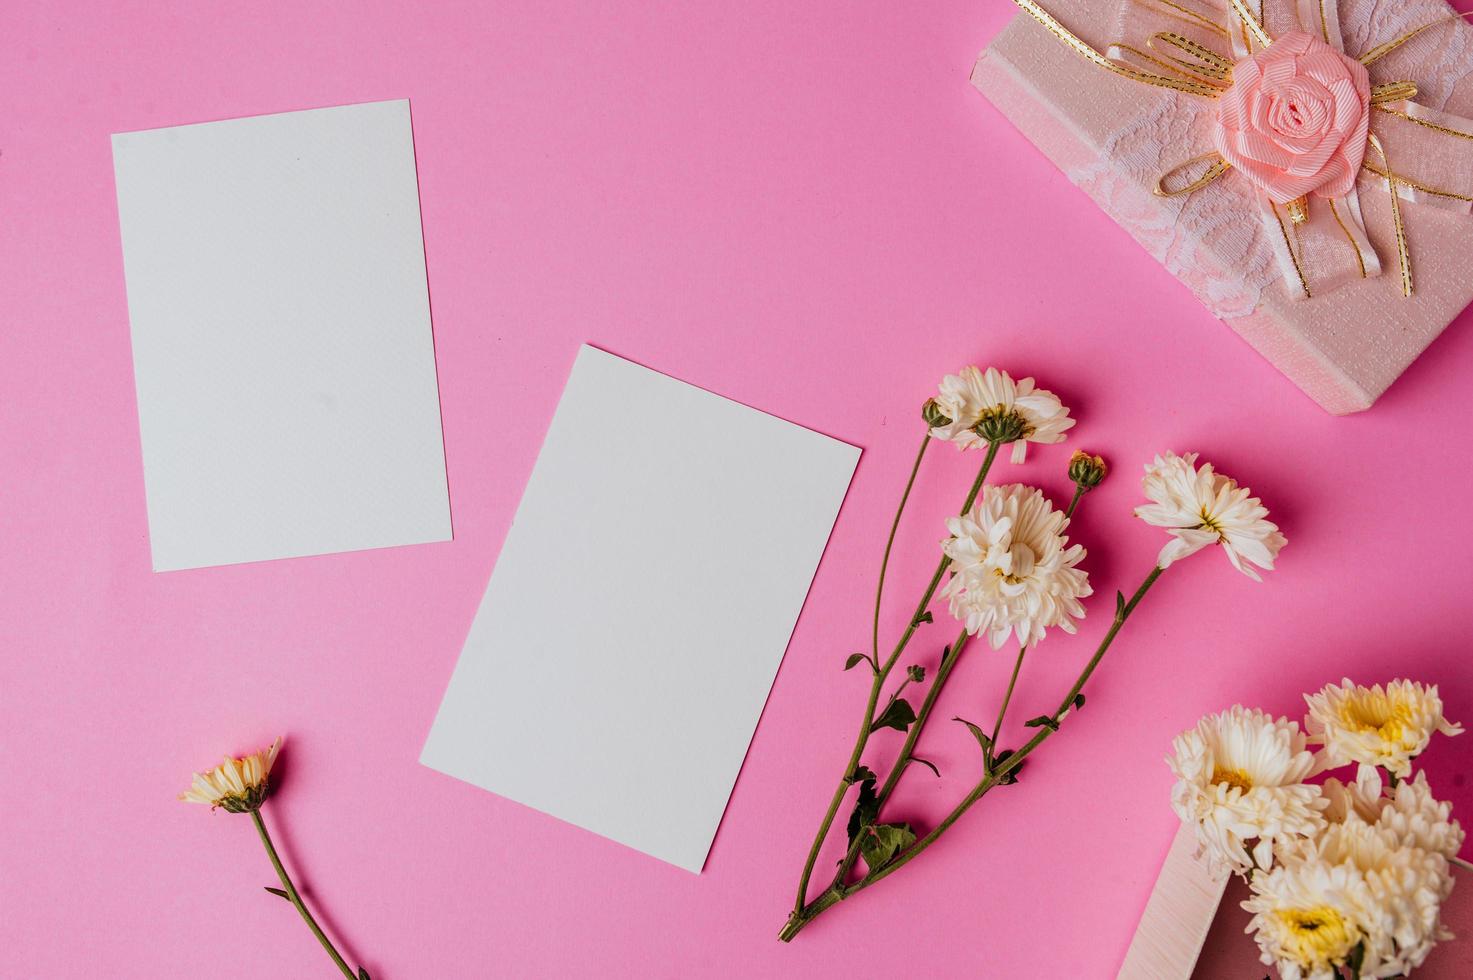 confezione regalo rosa, fiore e carta bianca su sfondo rosa foto